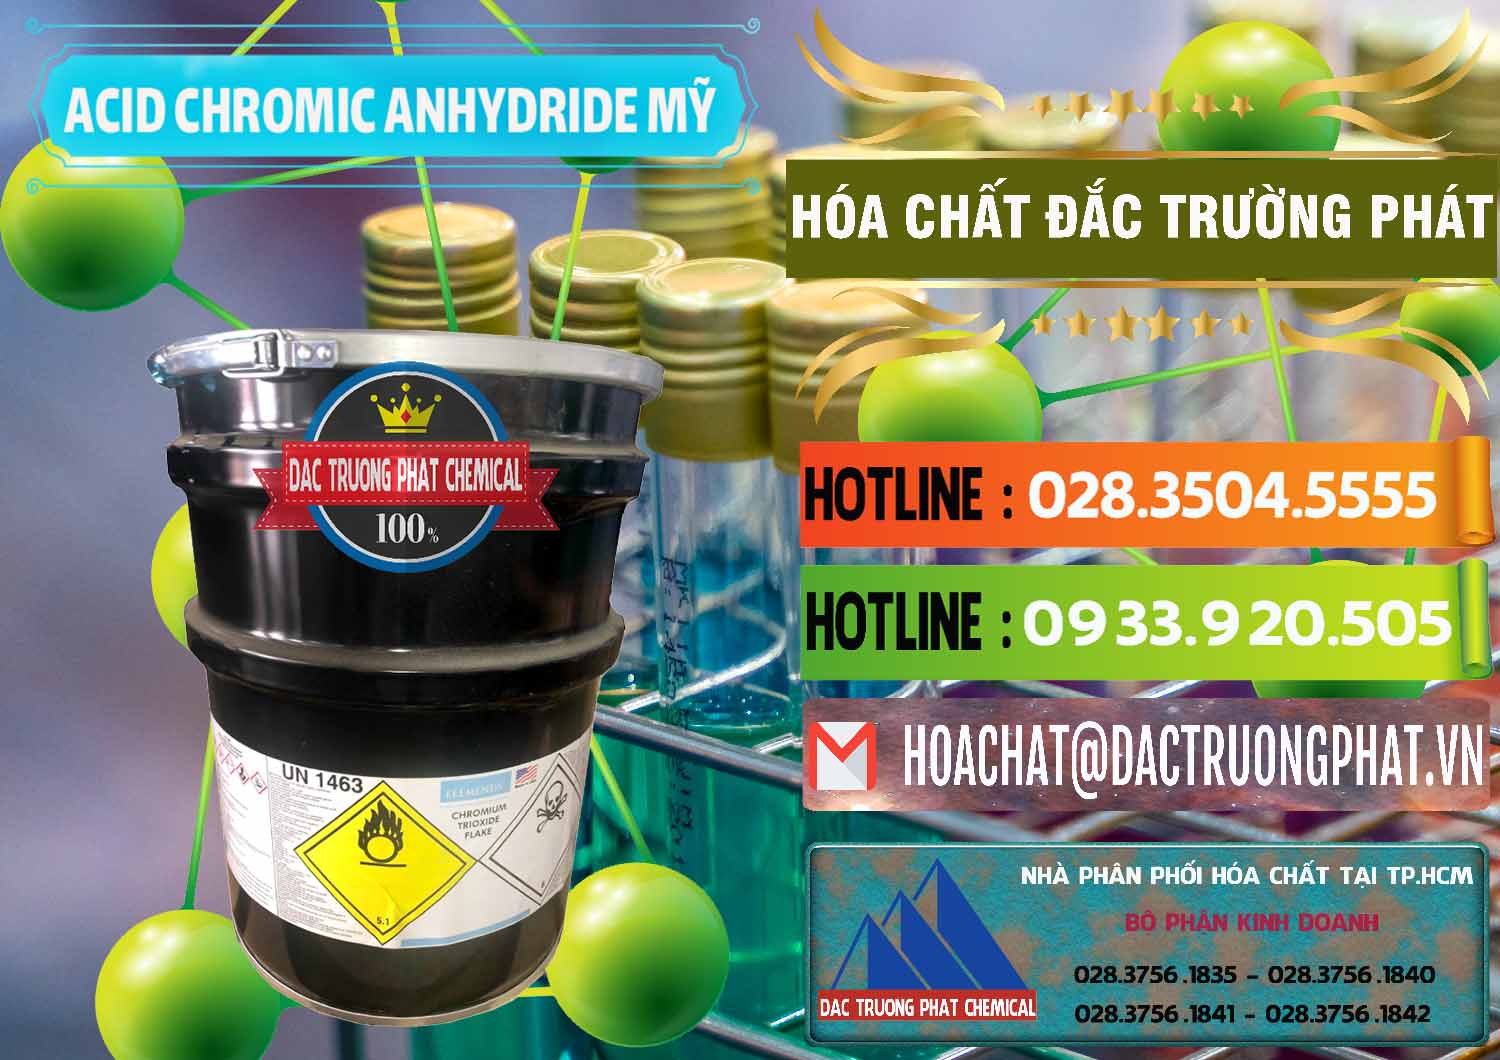 Nơi chuyên bán - cung cấp Acid Chromic Anhydride - Cromic CRO3 USA Mỹ - 0364 - Cty chuyên phân phối và nhập khẩu hóa chất tại TP.HCM - cungcaphoachat.com.vn